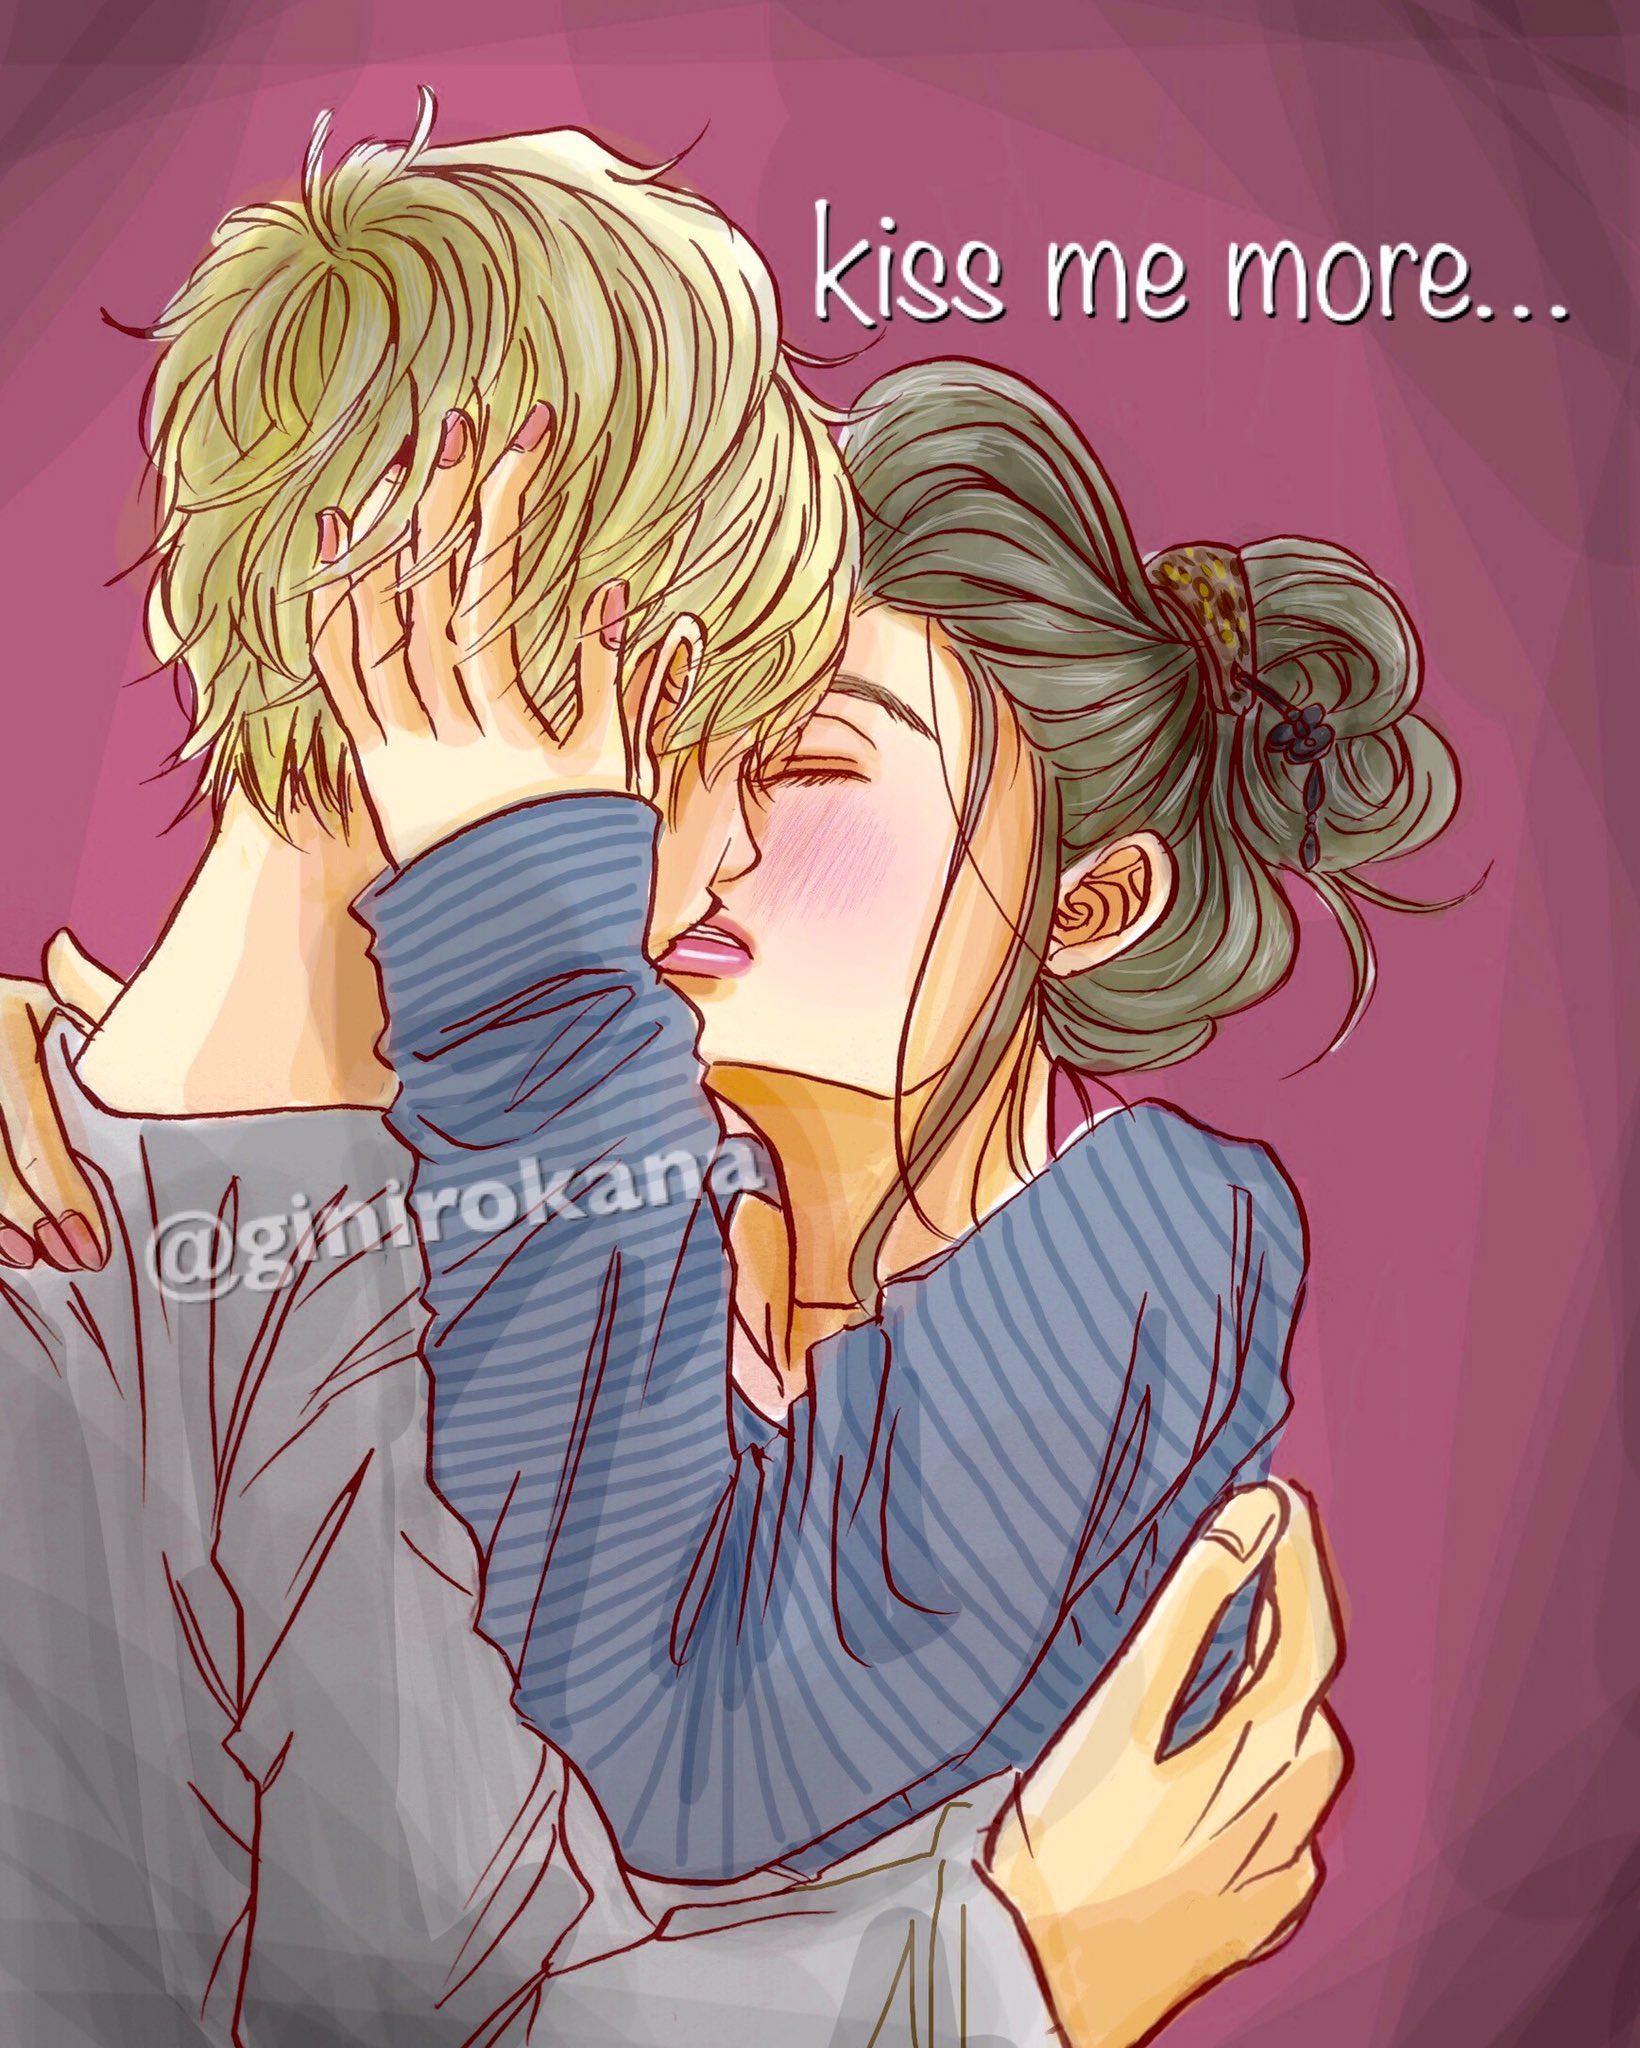 Twitter 上的 銀色 かな 単行本 巻発売中 あまりものでも恋は甘い ただ描きたかっただけ Kiss Kiss Kiss ラフな感じのシチュエーションが好きです Illustration イラスト 少女漫画 Manga カップル ラブラブ いちゃいちゃ Kiss キス ハグ